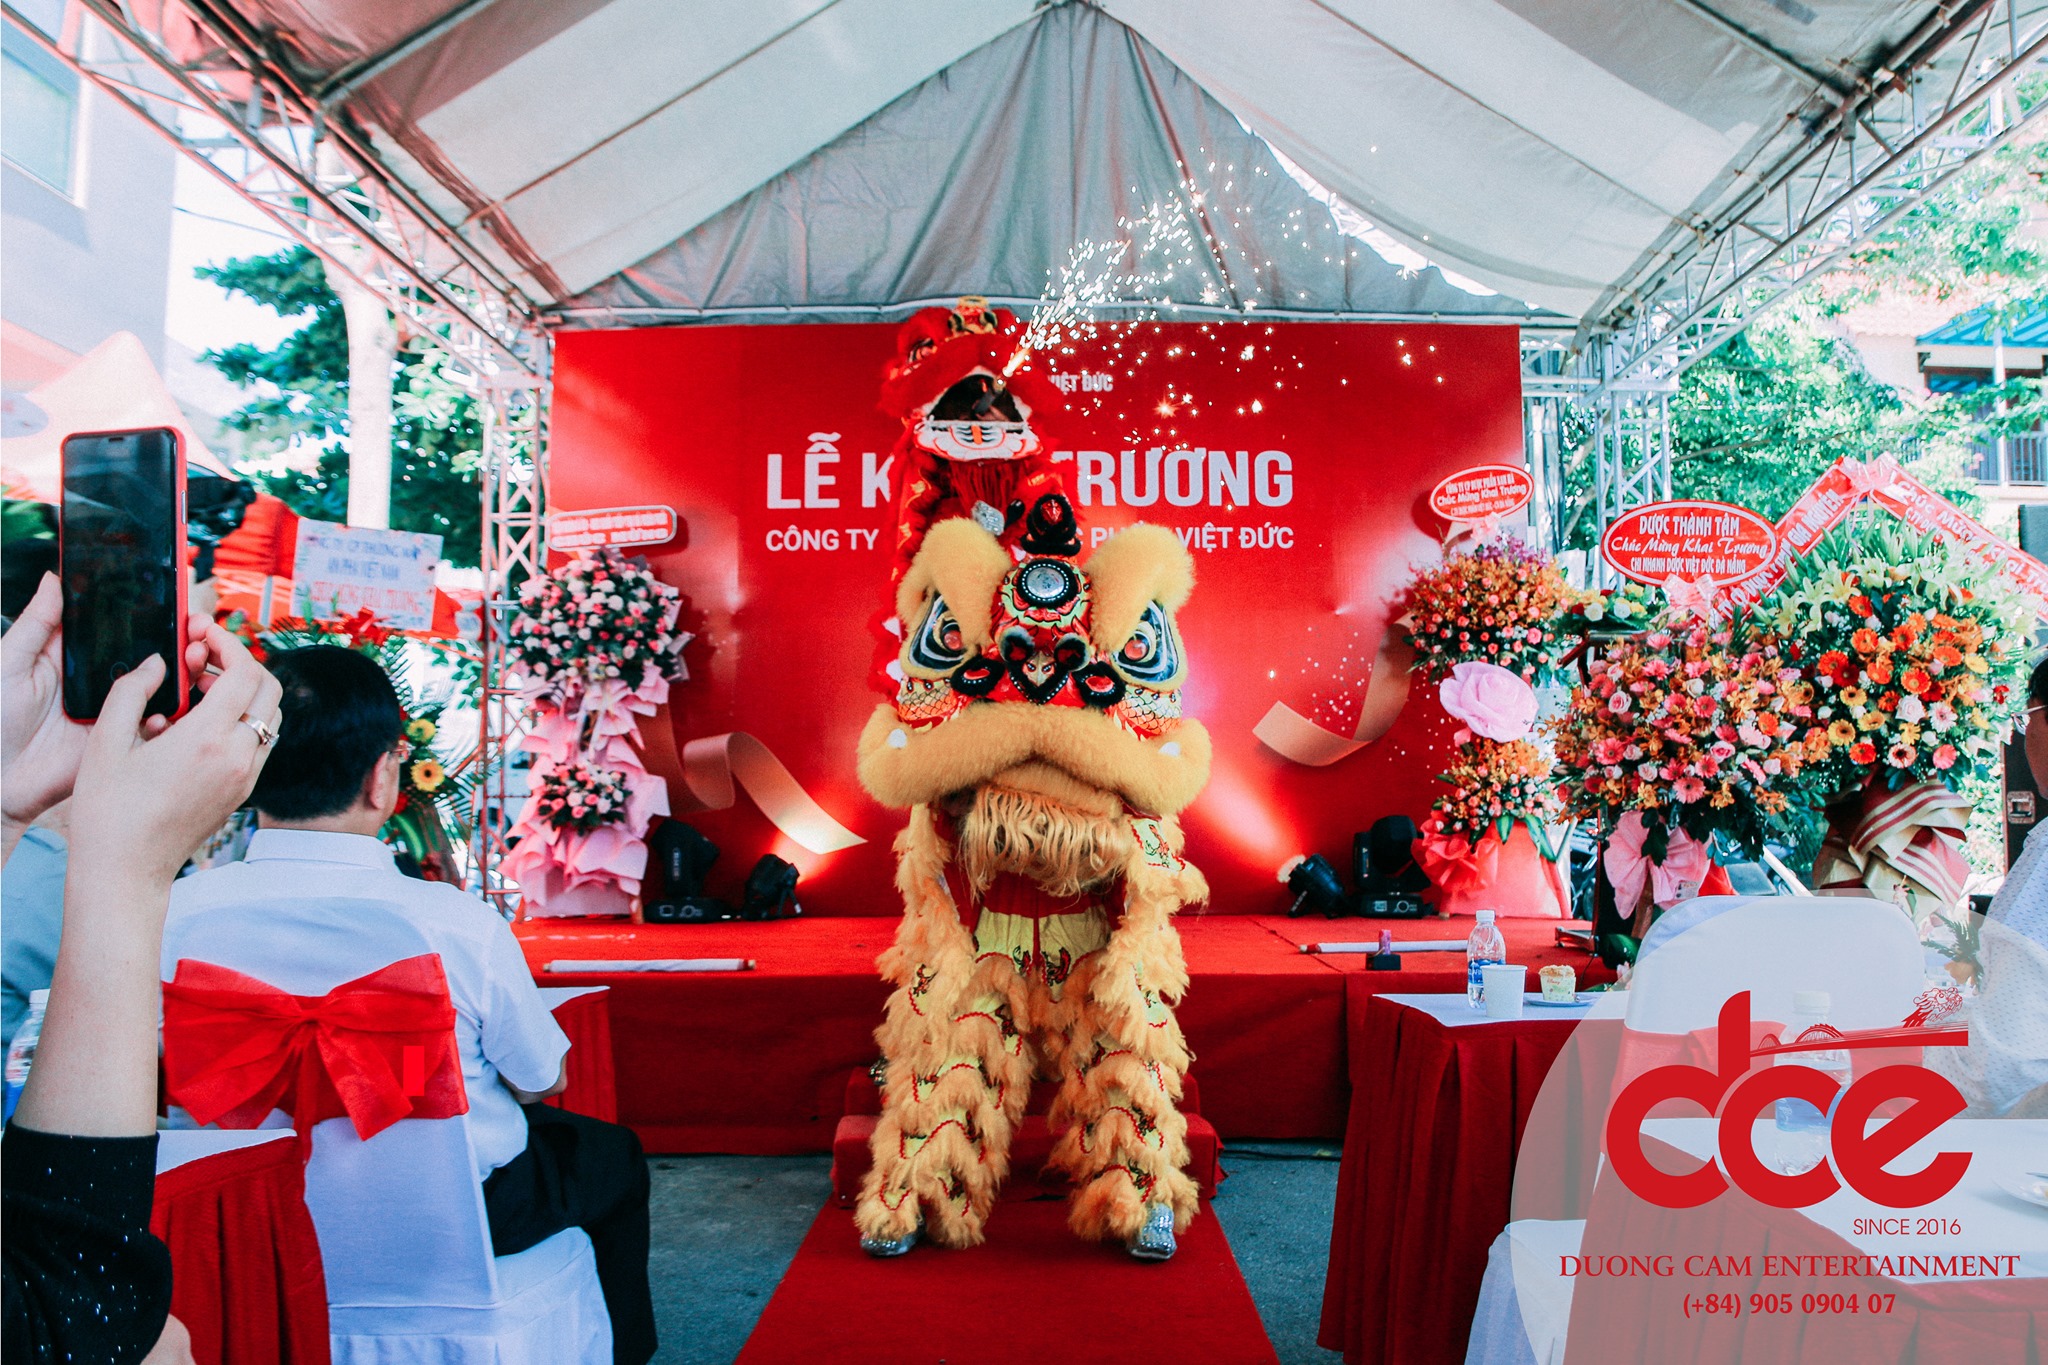 Dương Cầm Event là giải pháp tối ưu dành cho những doanh nghiệp đang tìm kiếm địa chỉ múa lân khai trương tại Đà Nẵng uy tín.